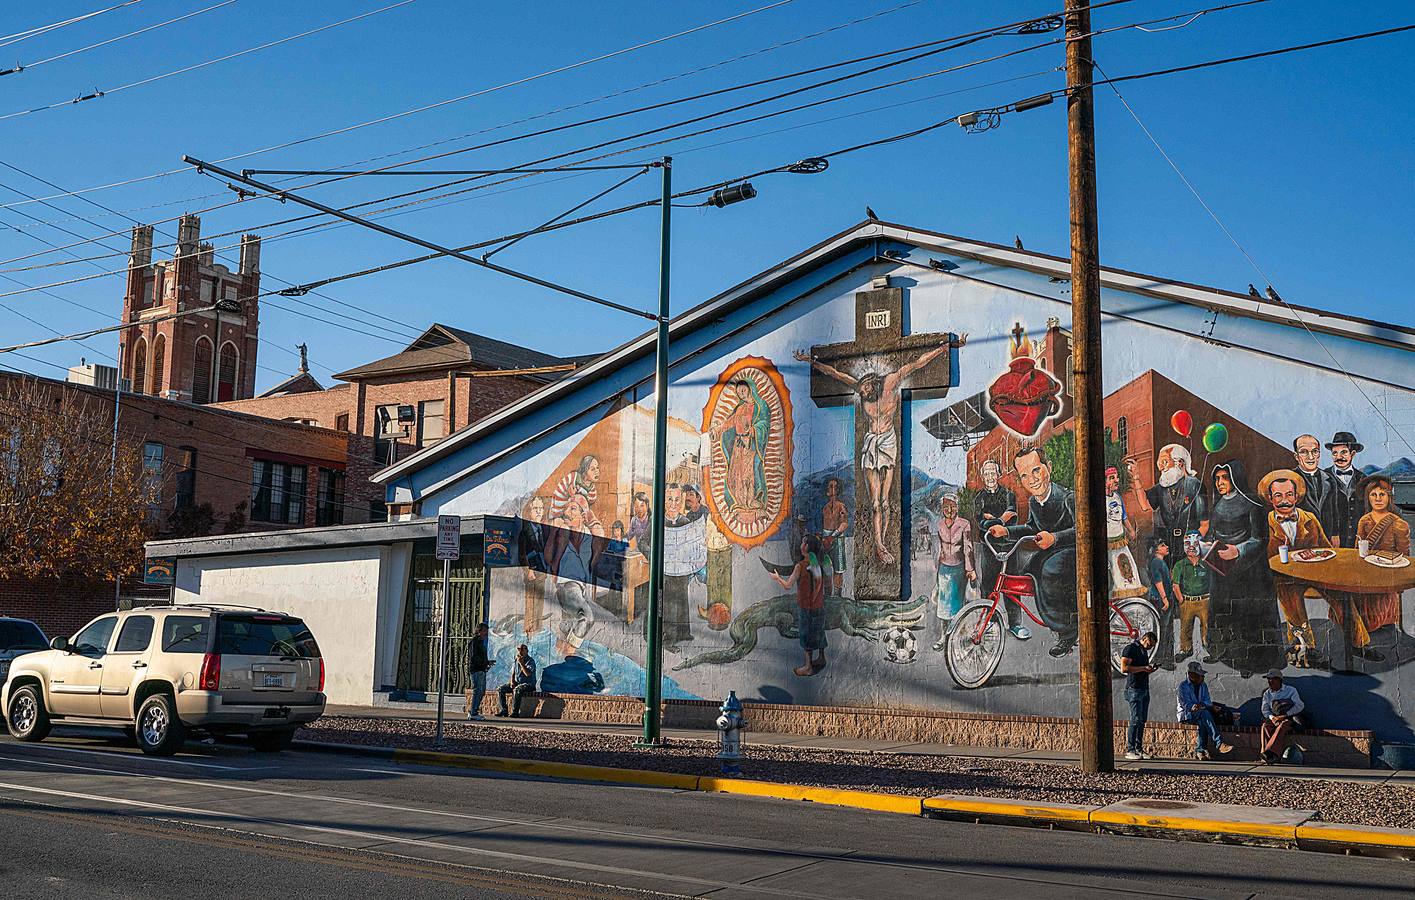 Más de 100 murales dispersos por la ciudad de El Paso, en Texas, representan la cultura y el orgullo comunitario y latinoamericano de la región. La mayor concentración de estas creaciones de arte público, algunas de las cuales tienen más de 80 años, están ubicadas en los distritos de Lincoln Park y El Segundo Barrio. Artistas como Jesús Alvarado y Martín Zubía (en las fotos) trabajan estos días en la creación de nuevas pinturas.